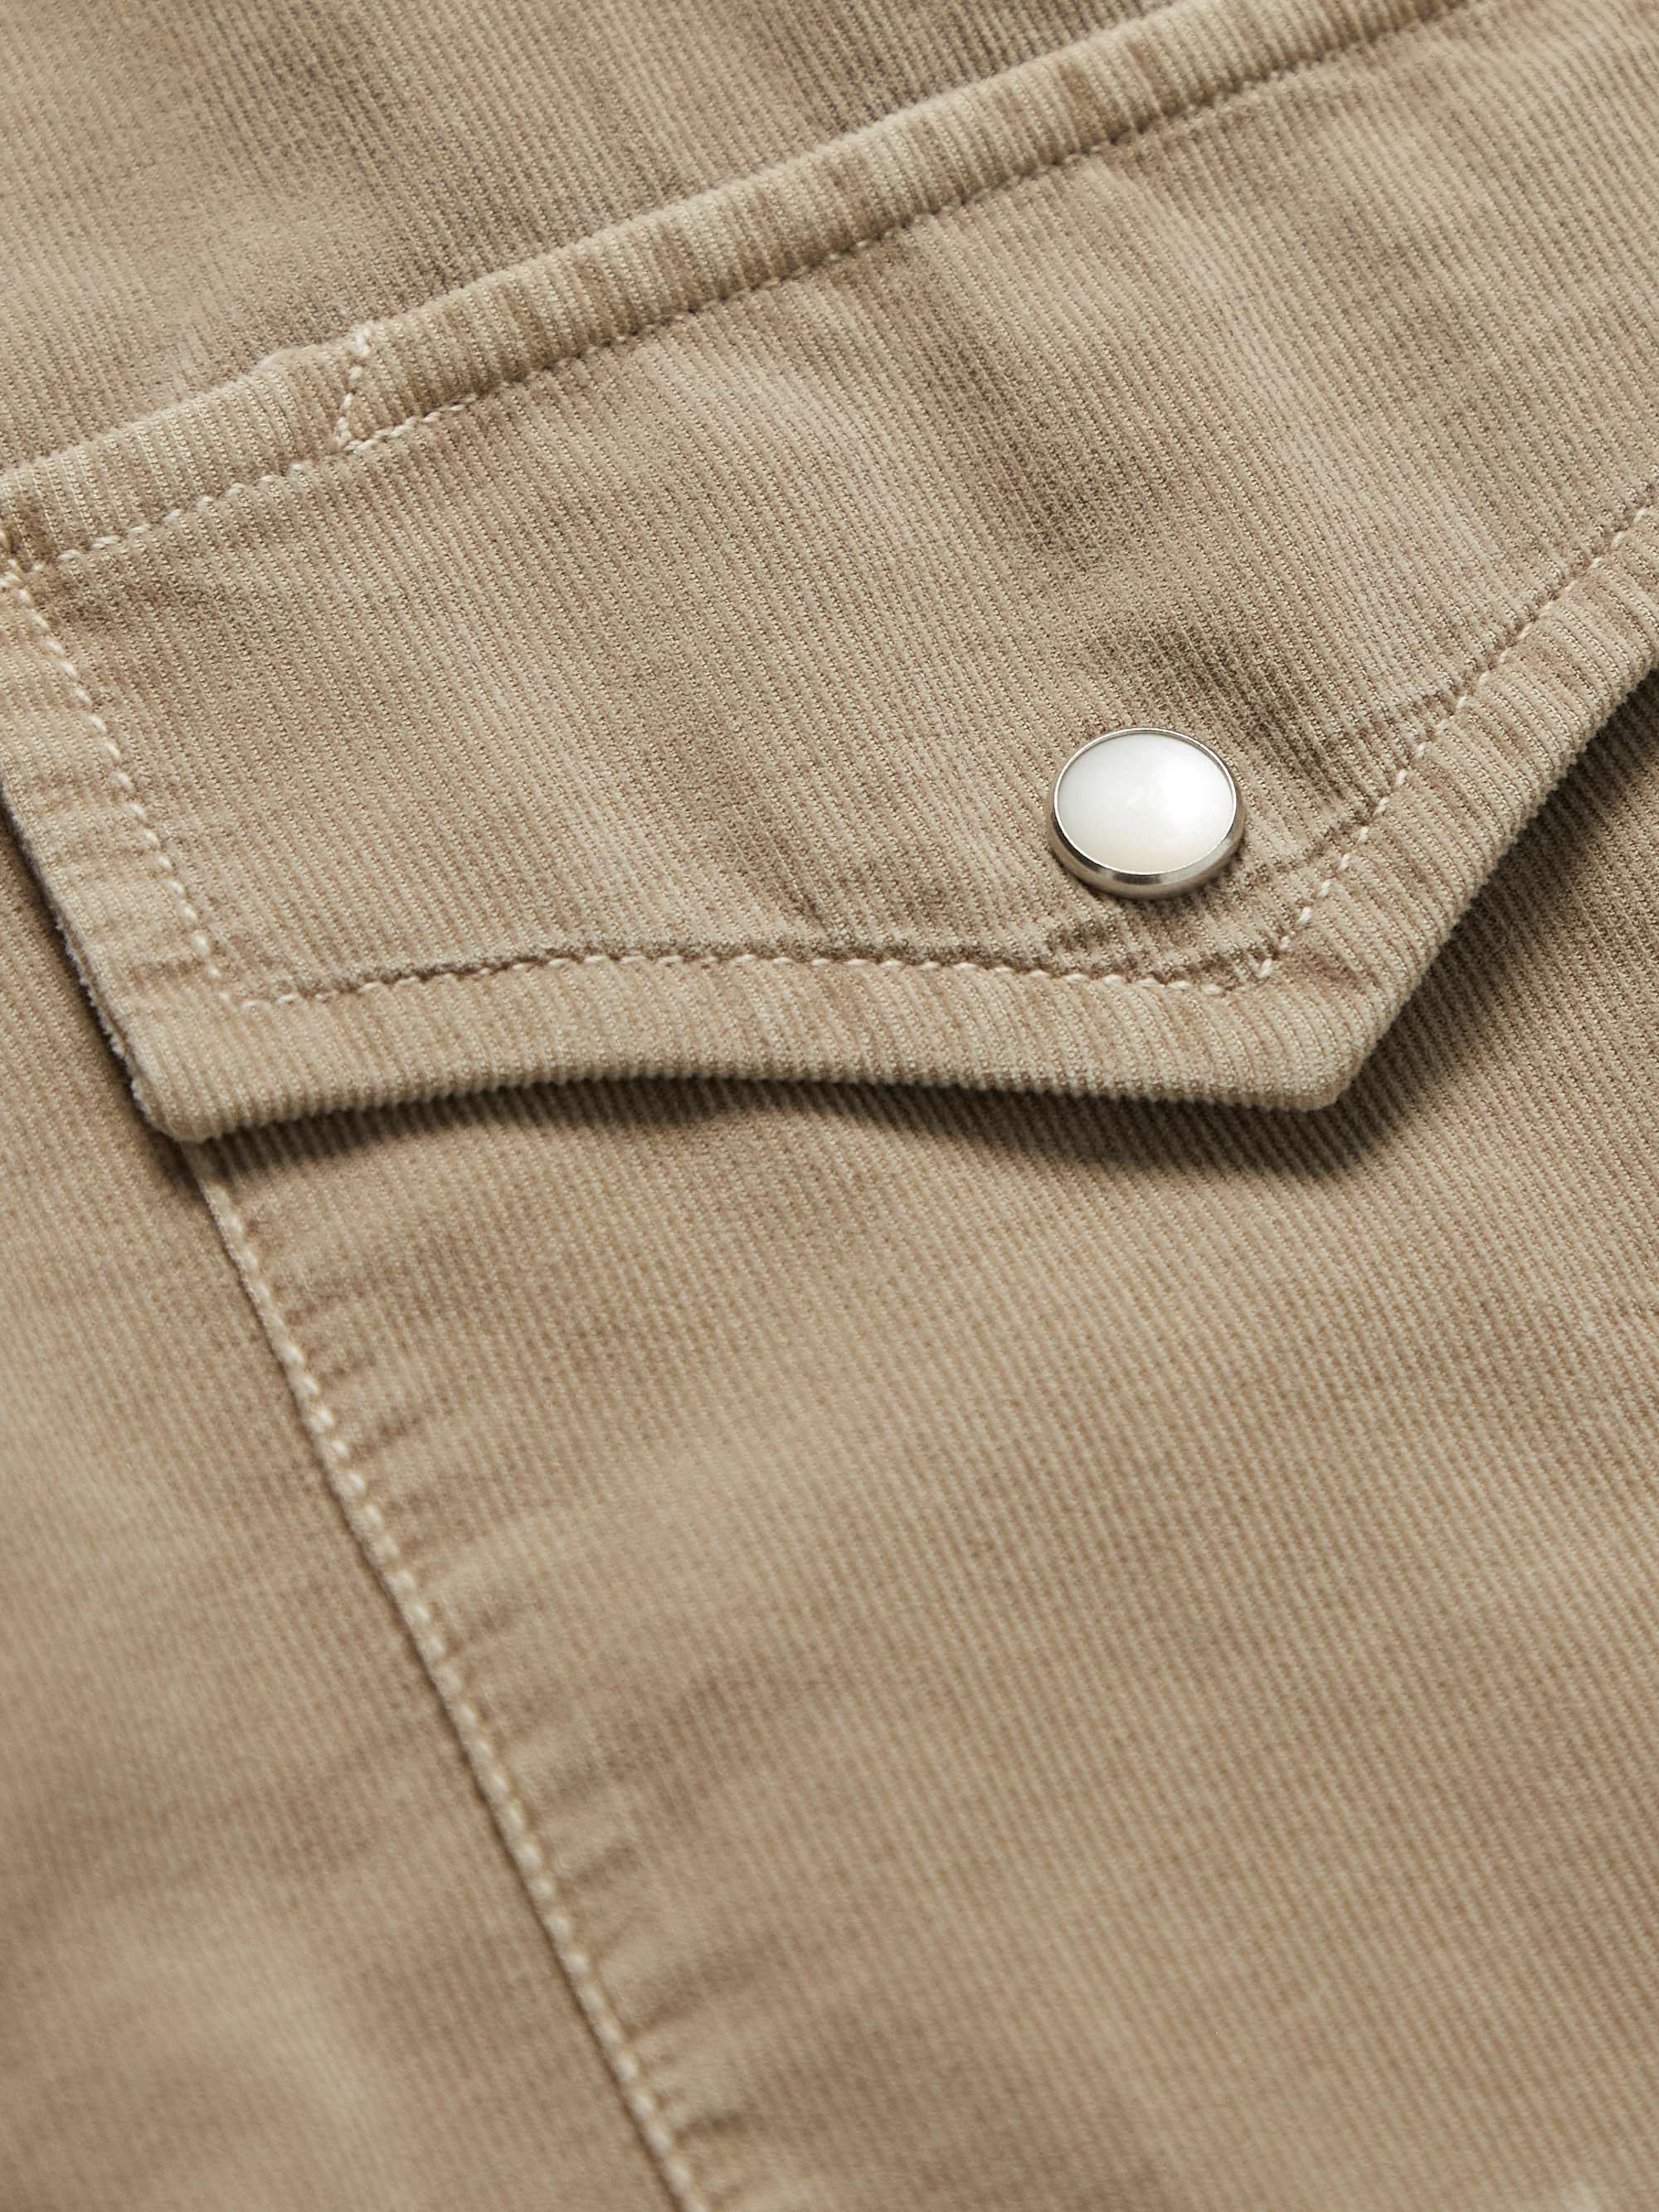 BRUNELLO CUCINELLI Garment-Dyed Cotton-Corduroy Western Shirt